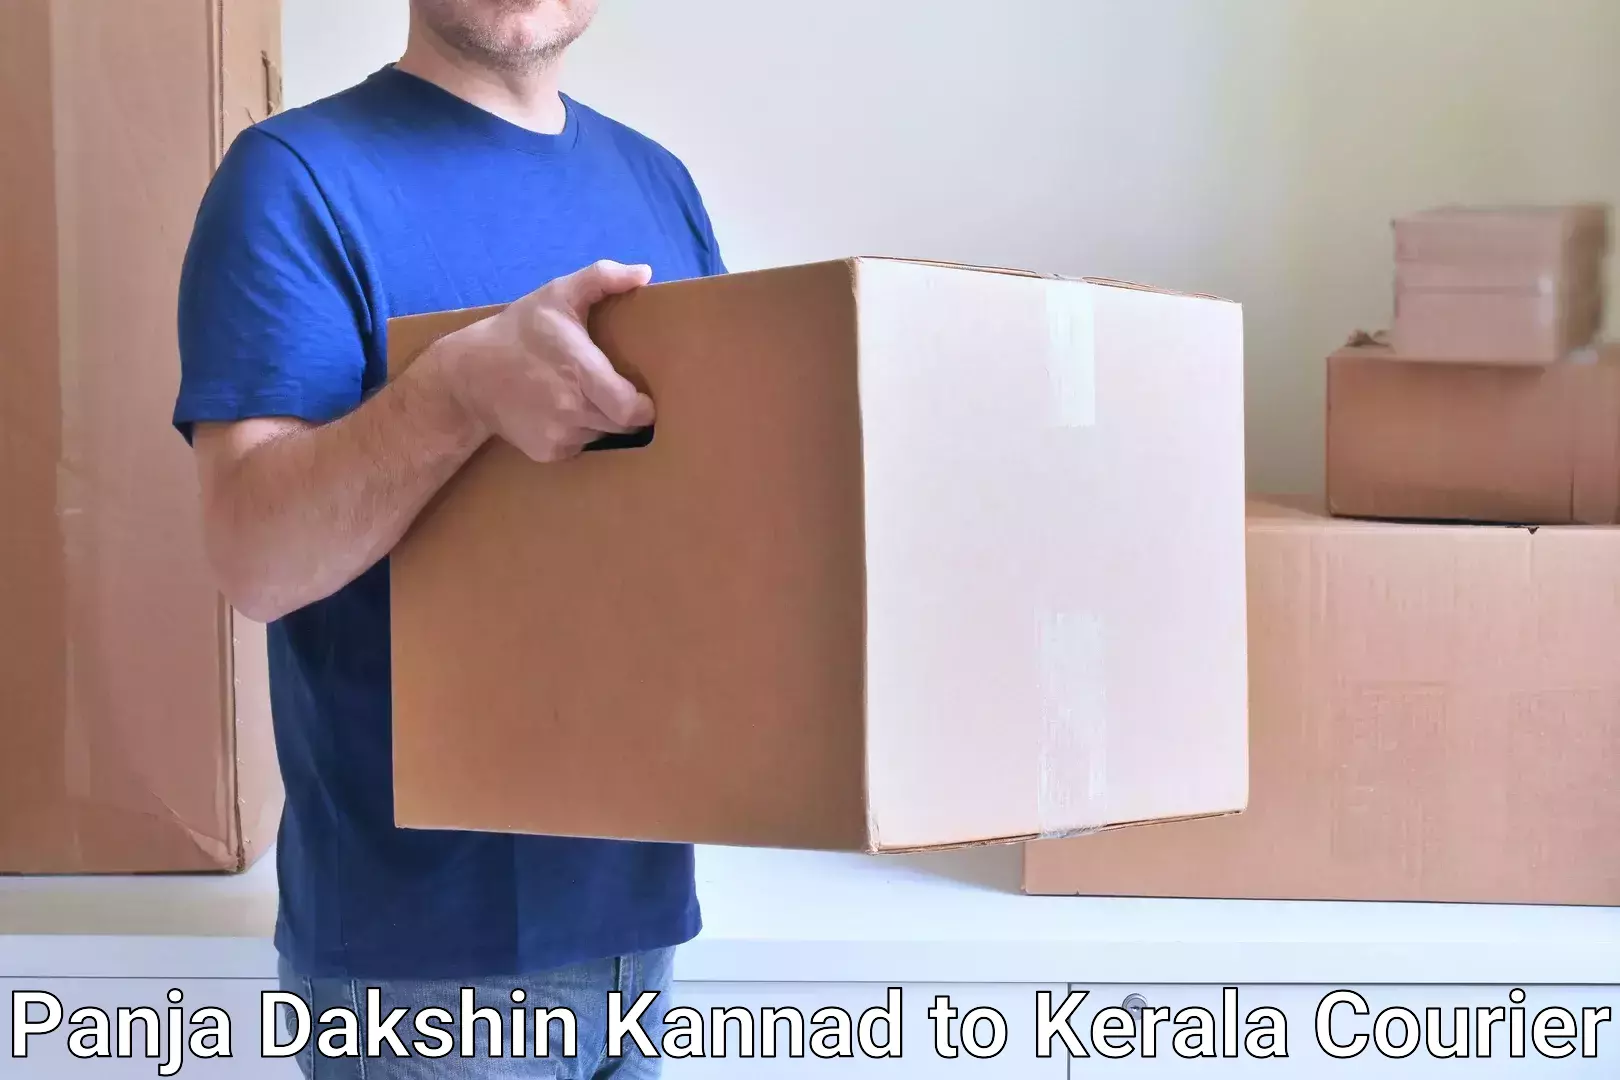 Ocean freight courier Panja Dakshin Kannad to Kuchi